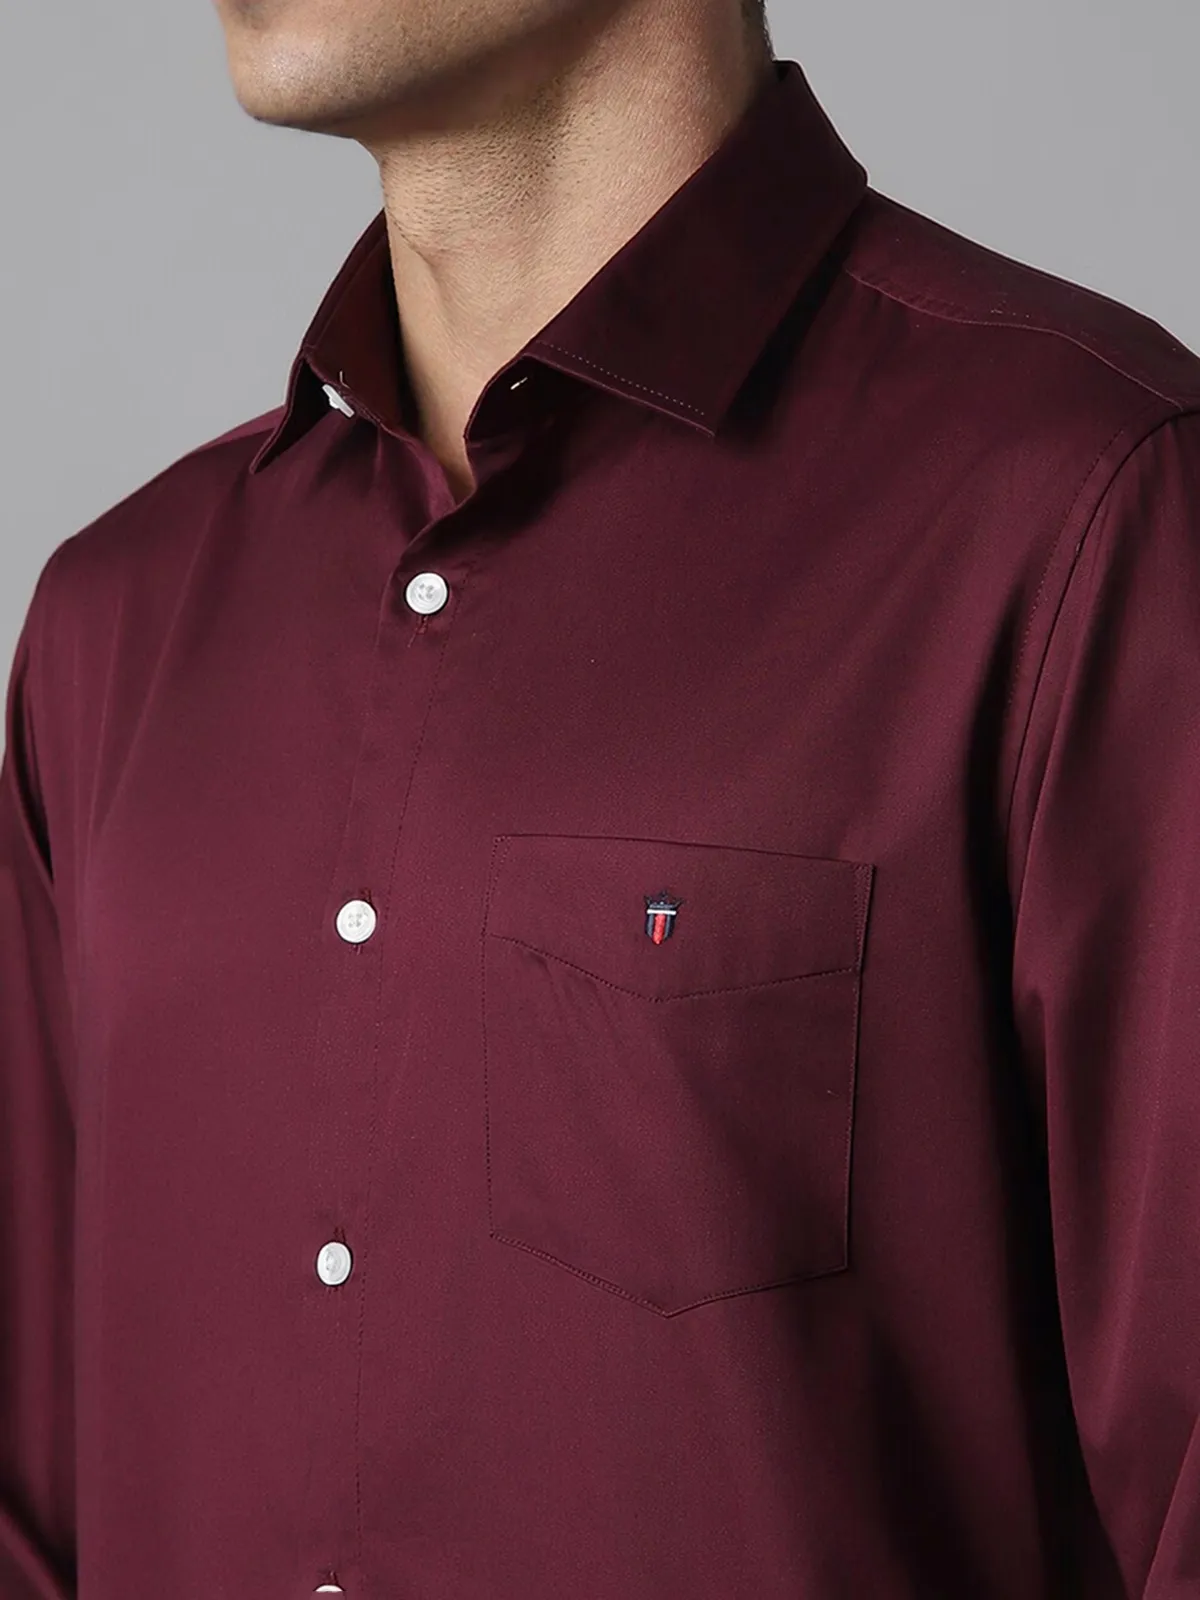 LP plain maroon cotton casual shirt